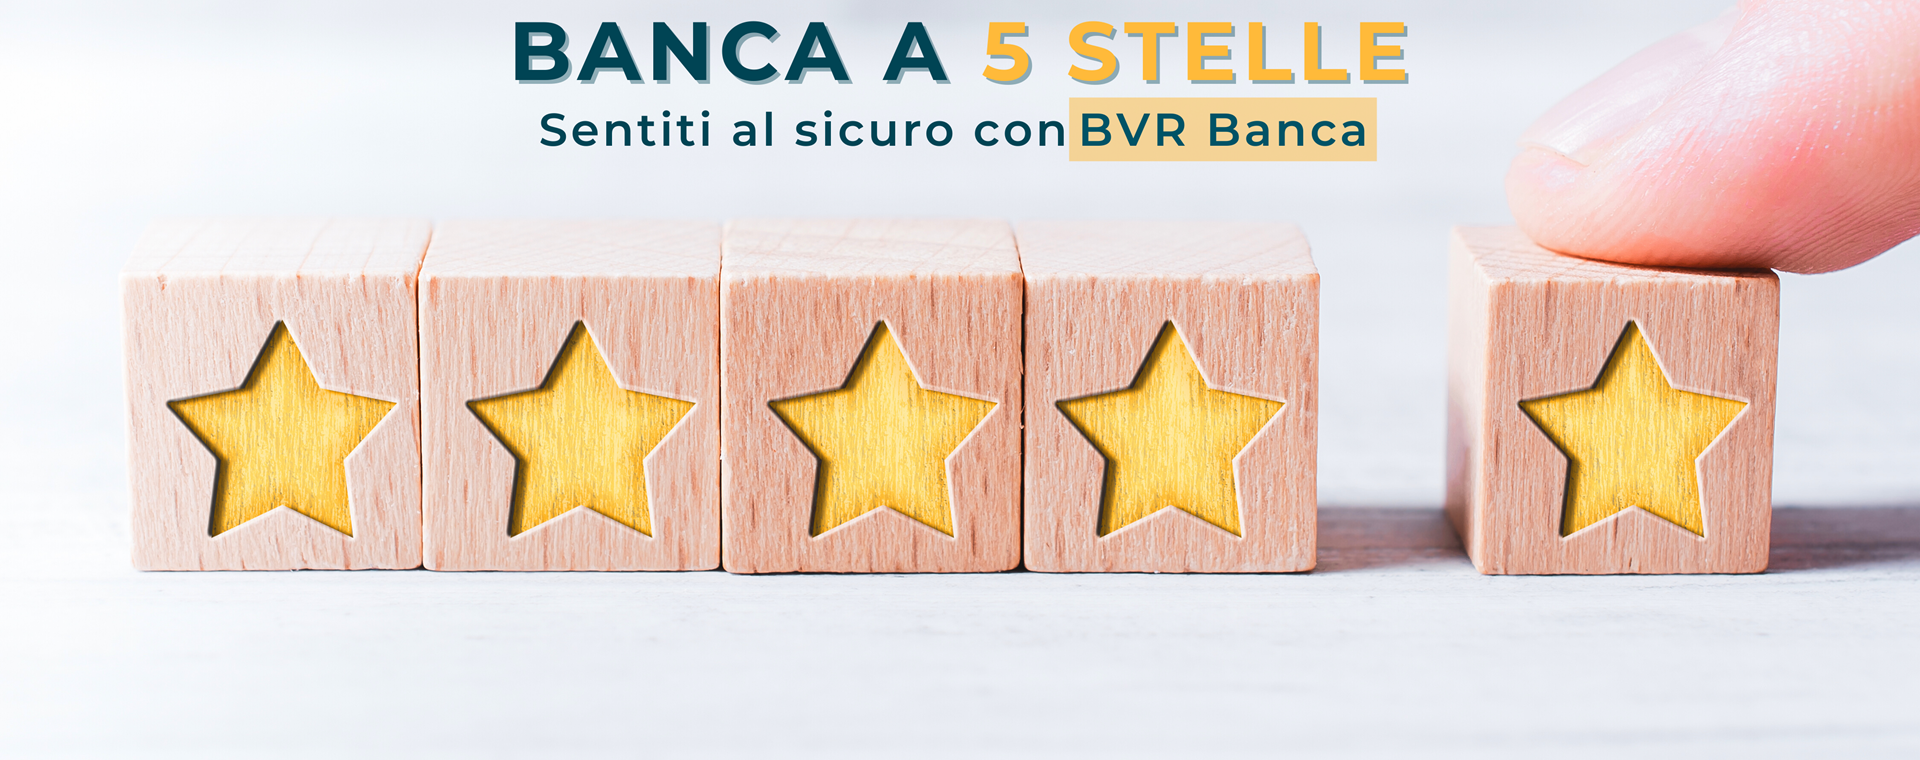 BVR Banca premiata come banca sicura e solida con 5 stelle su 5 . 